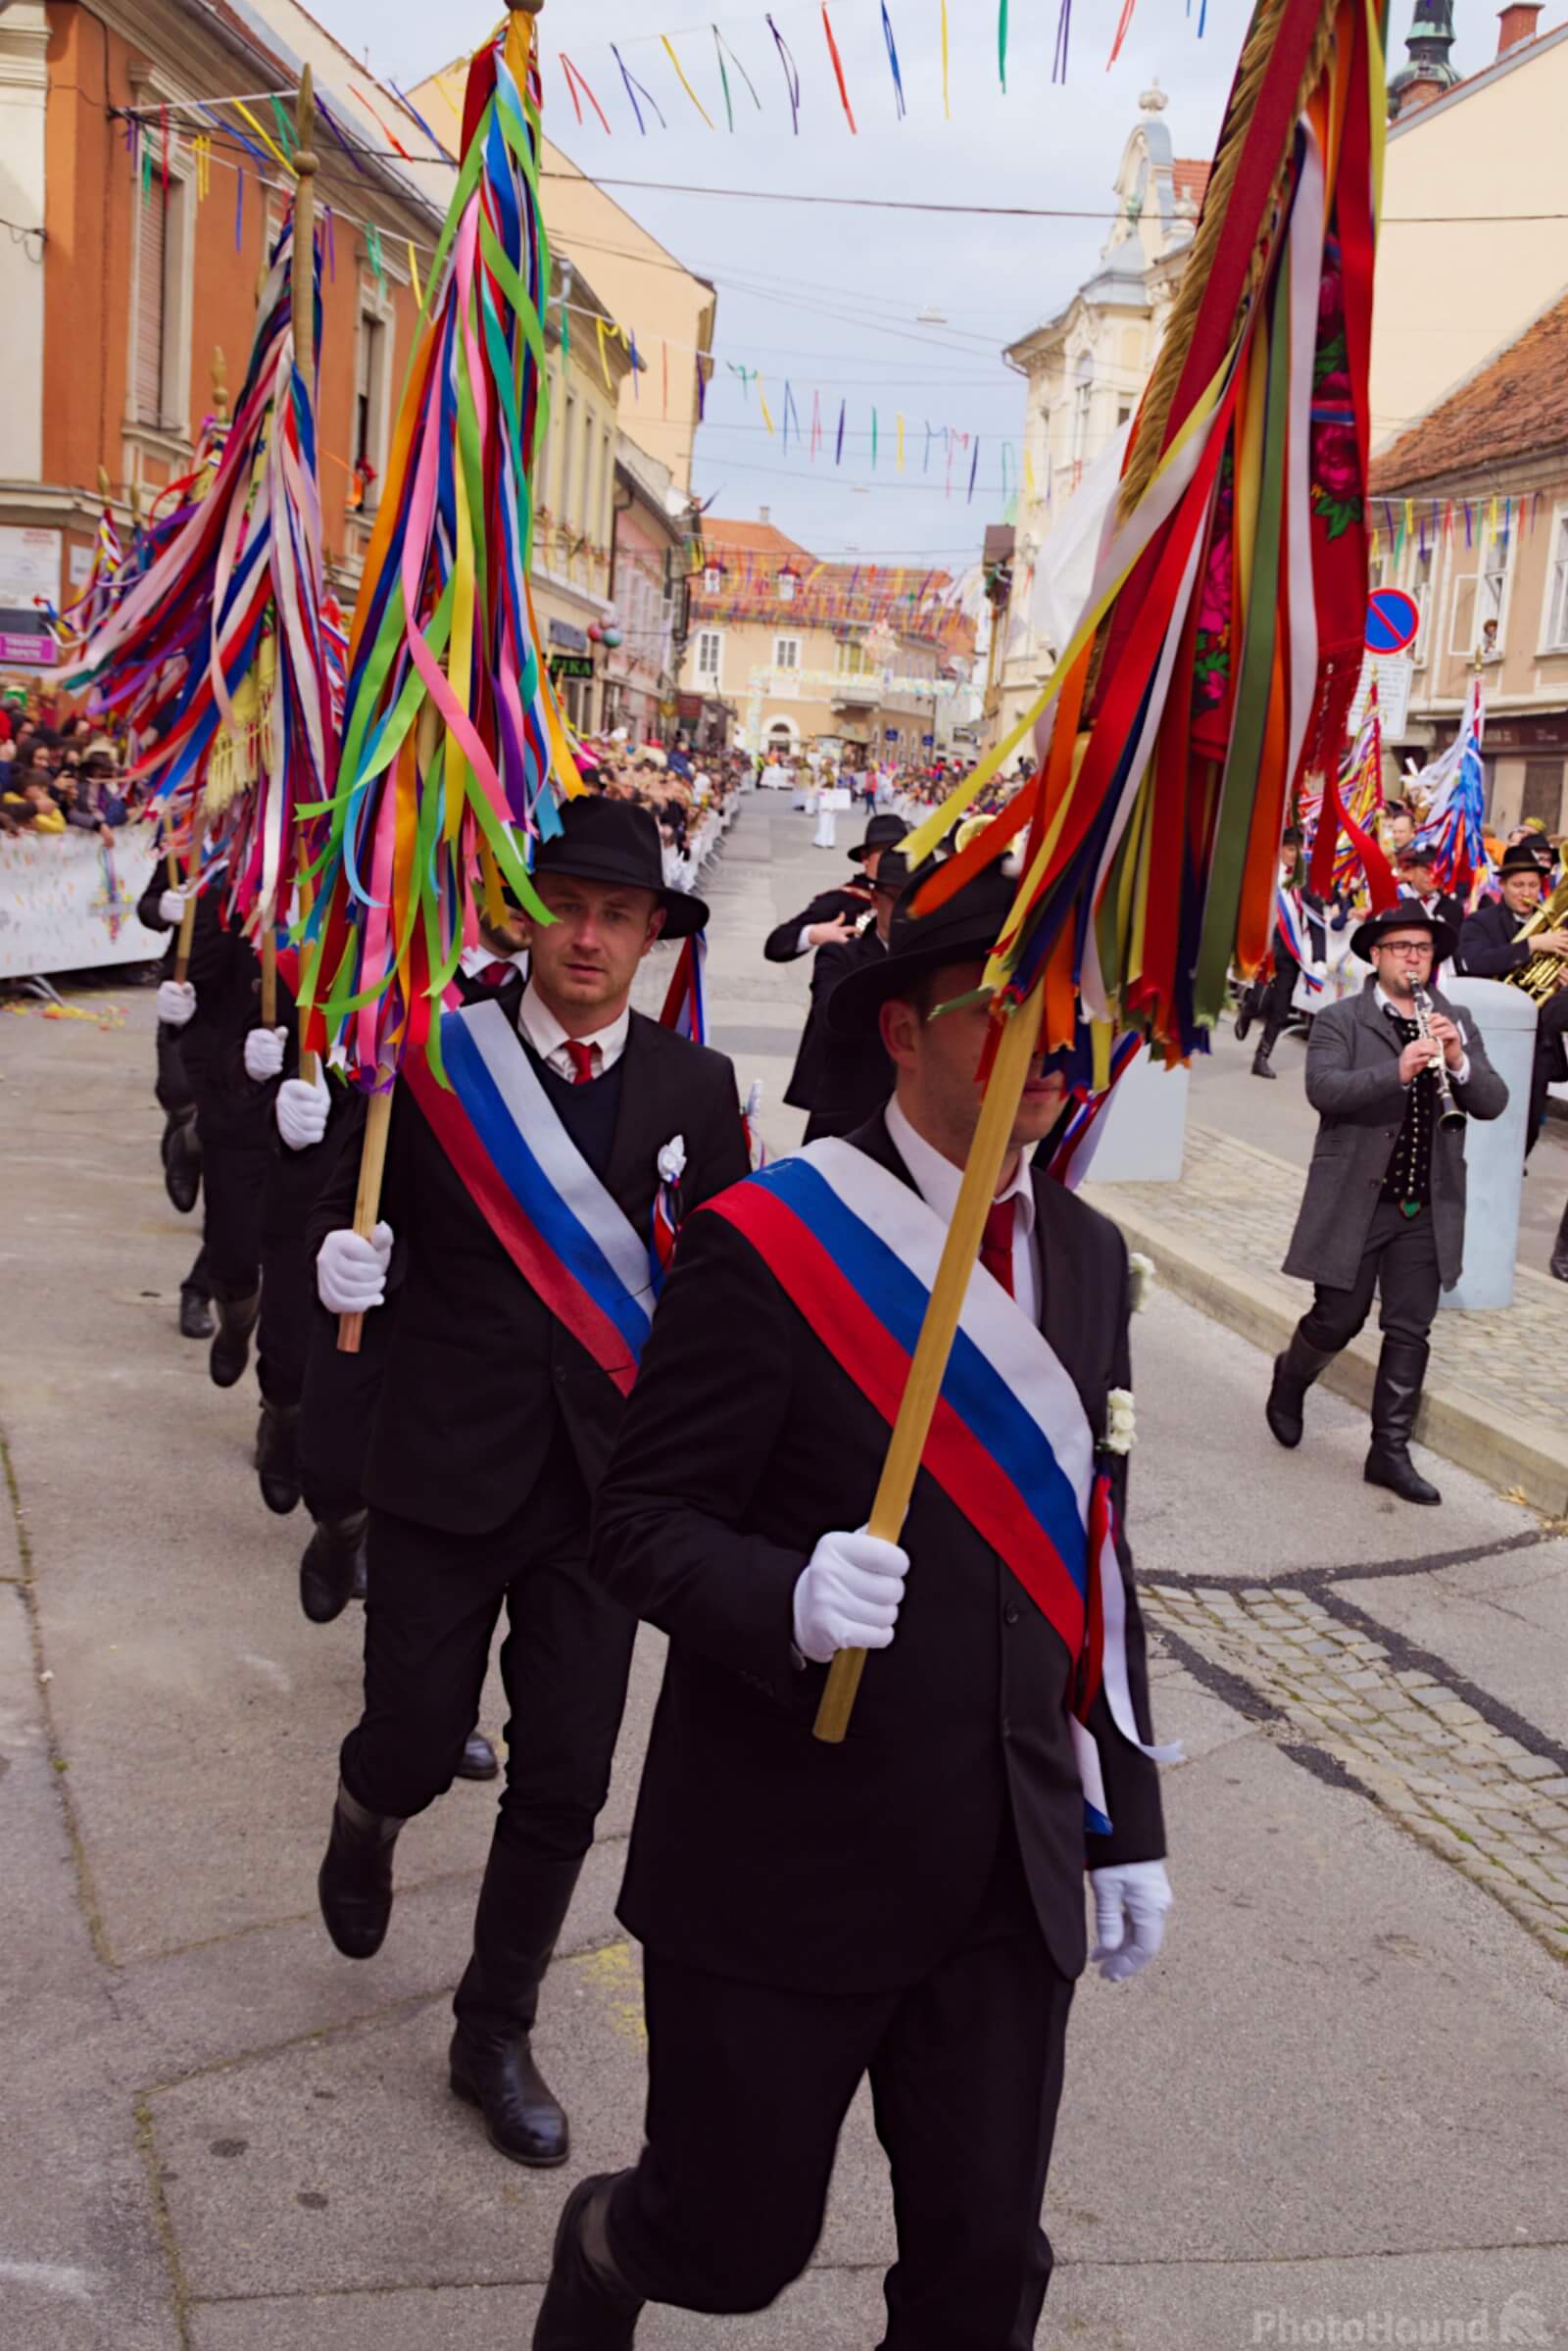 Image of Kurentovanje international carnival festival by Andreja Tominac